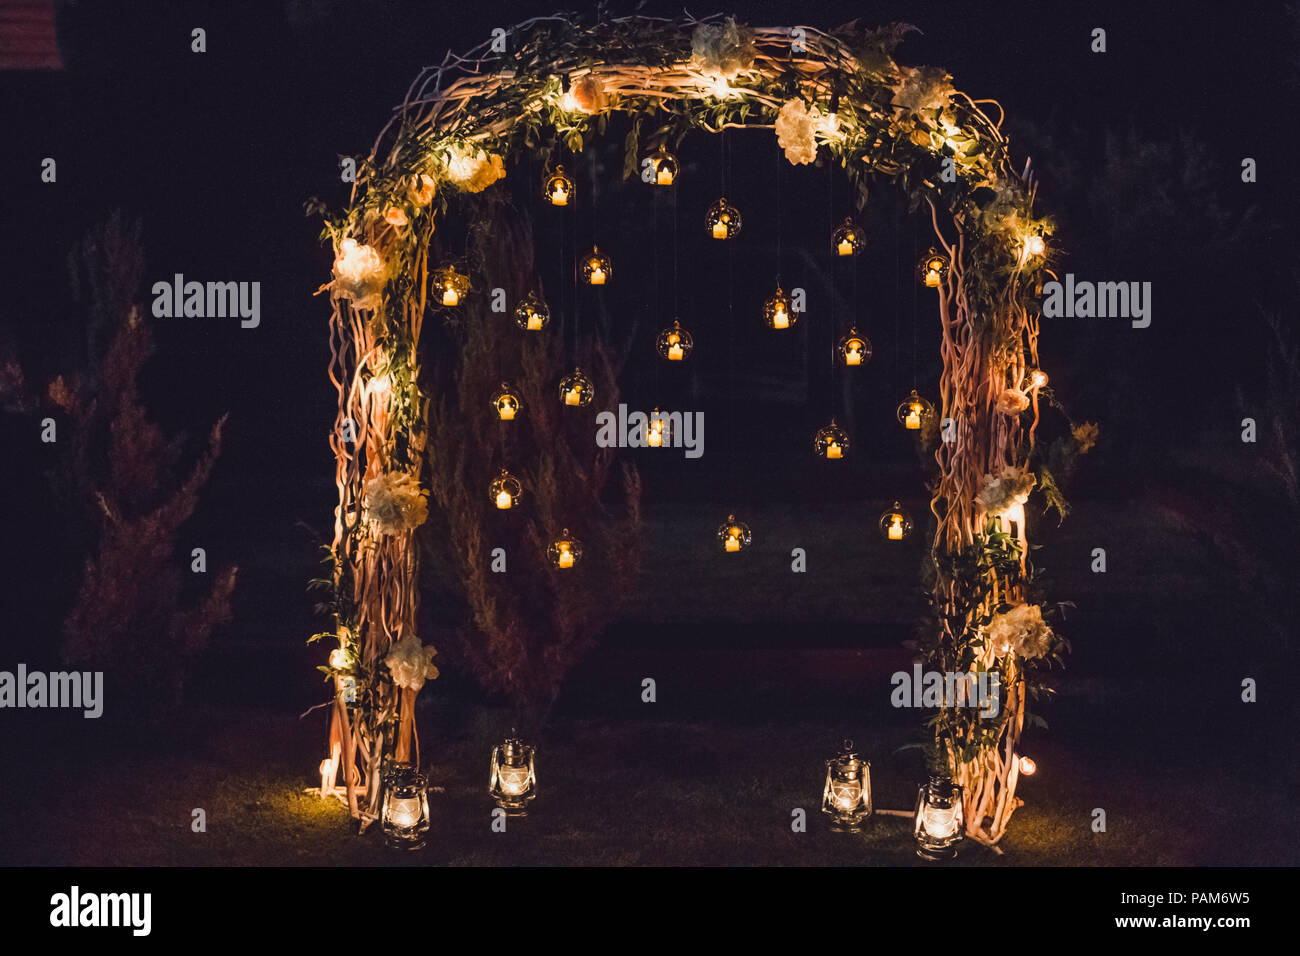 Nacht Trauung, Bogen auf Party mit Lichter und Kerzen in runden Glaskugeln eingerichtet Stockfoto